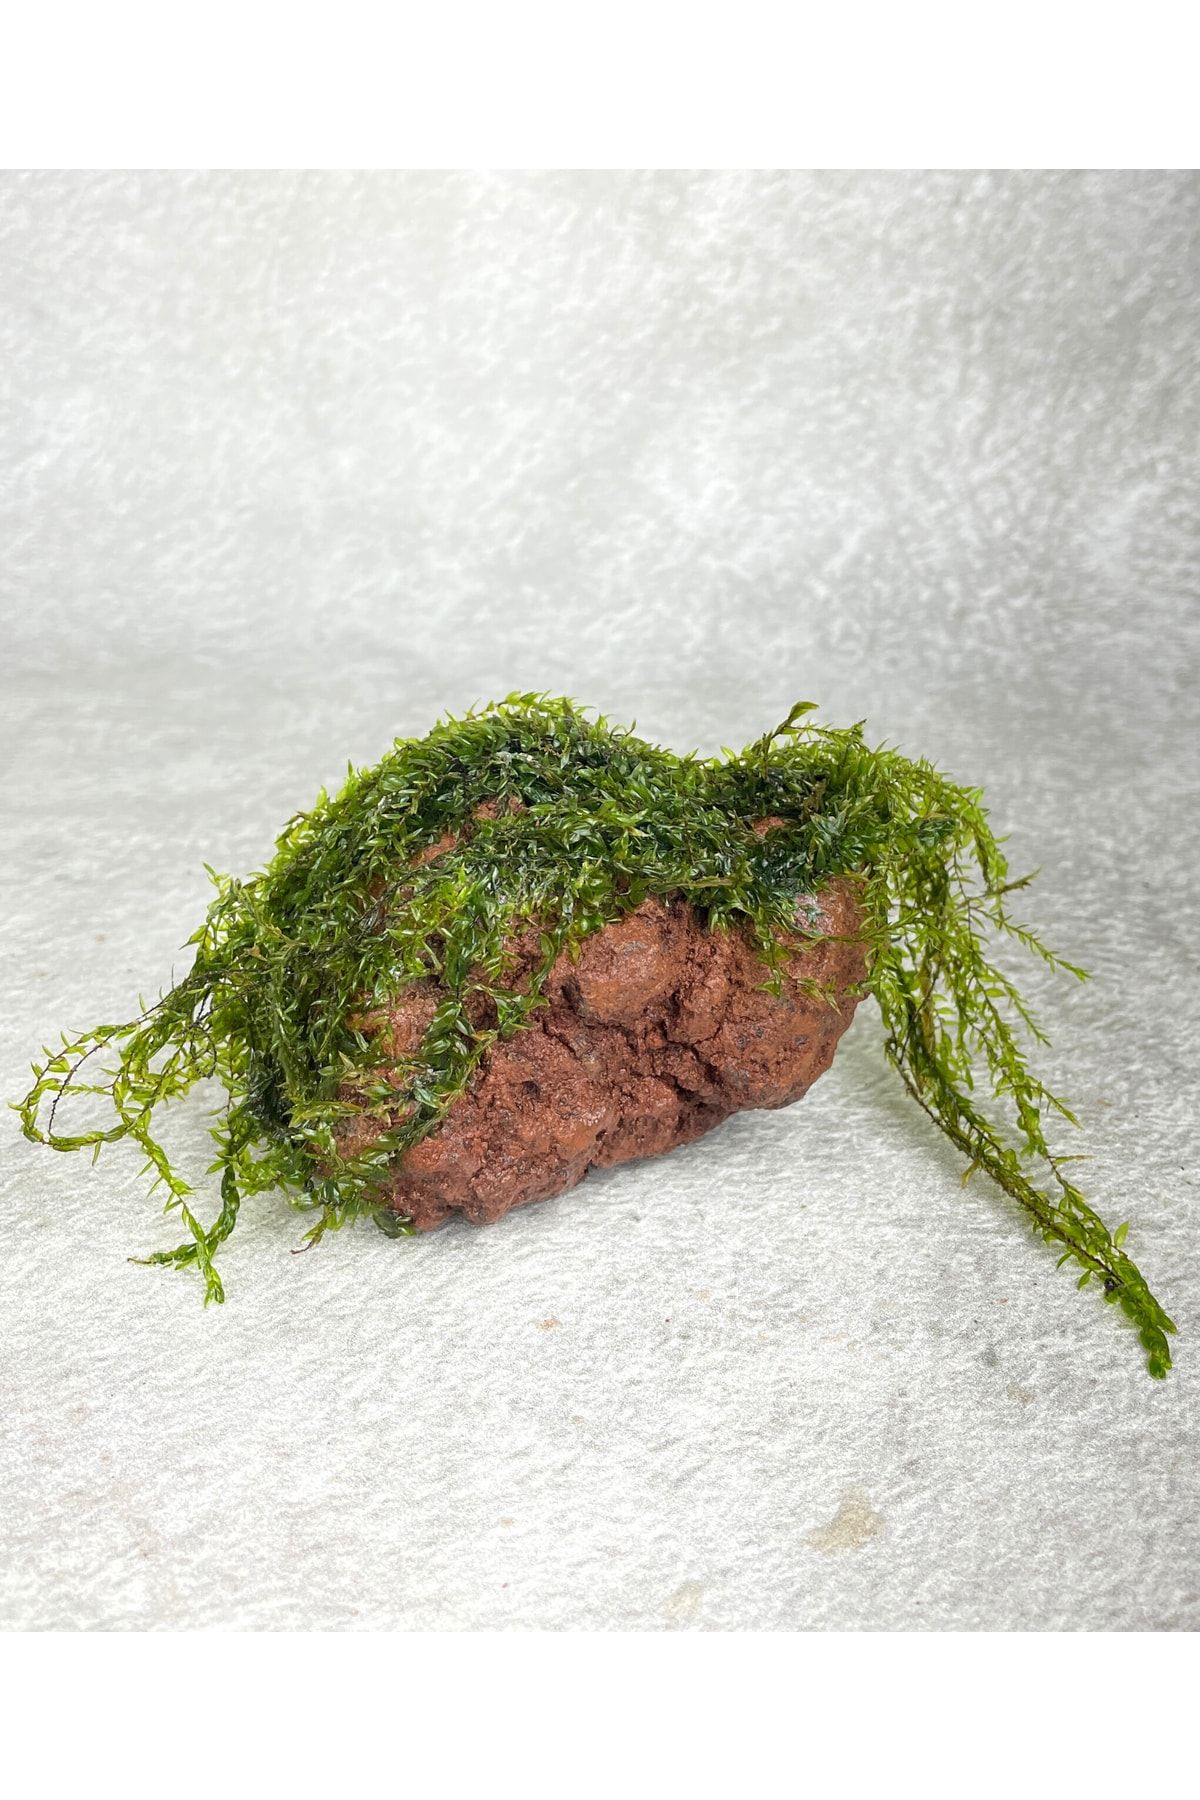 WOOF Moss Sarılı Lav Kayası Lav Kayası Akvaryum Dekoru 10-20 Cm Karides Ve Balık Yuvası Akvaryum Bitki